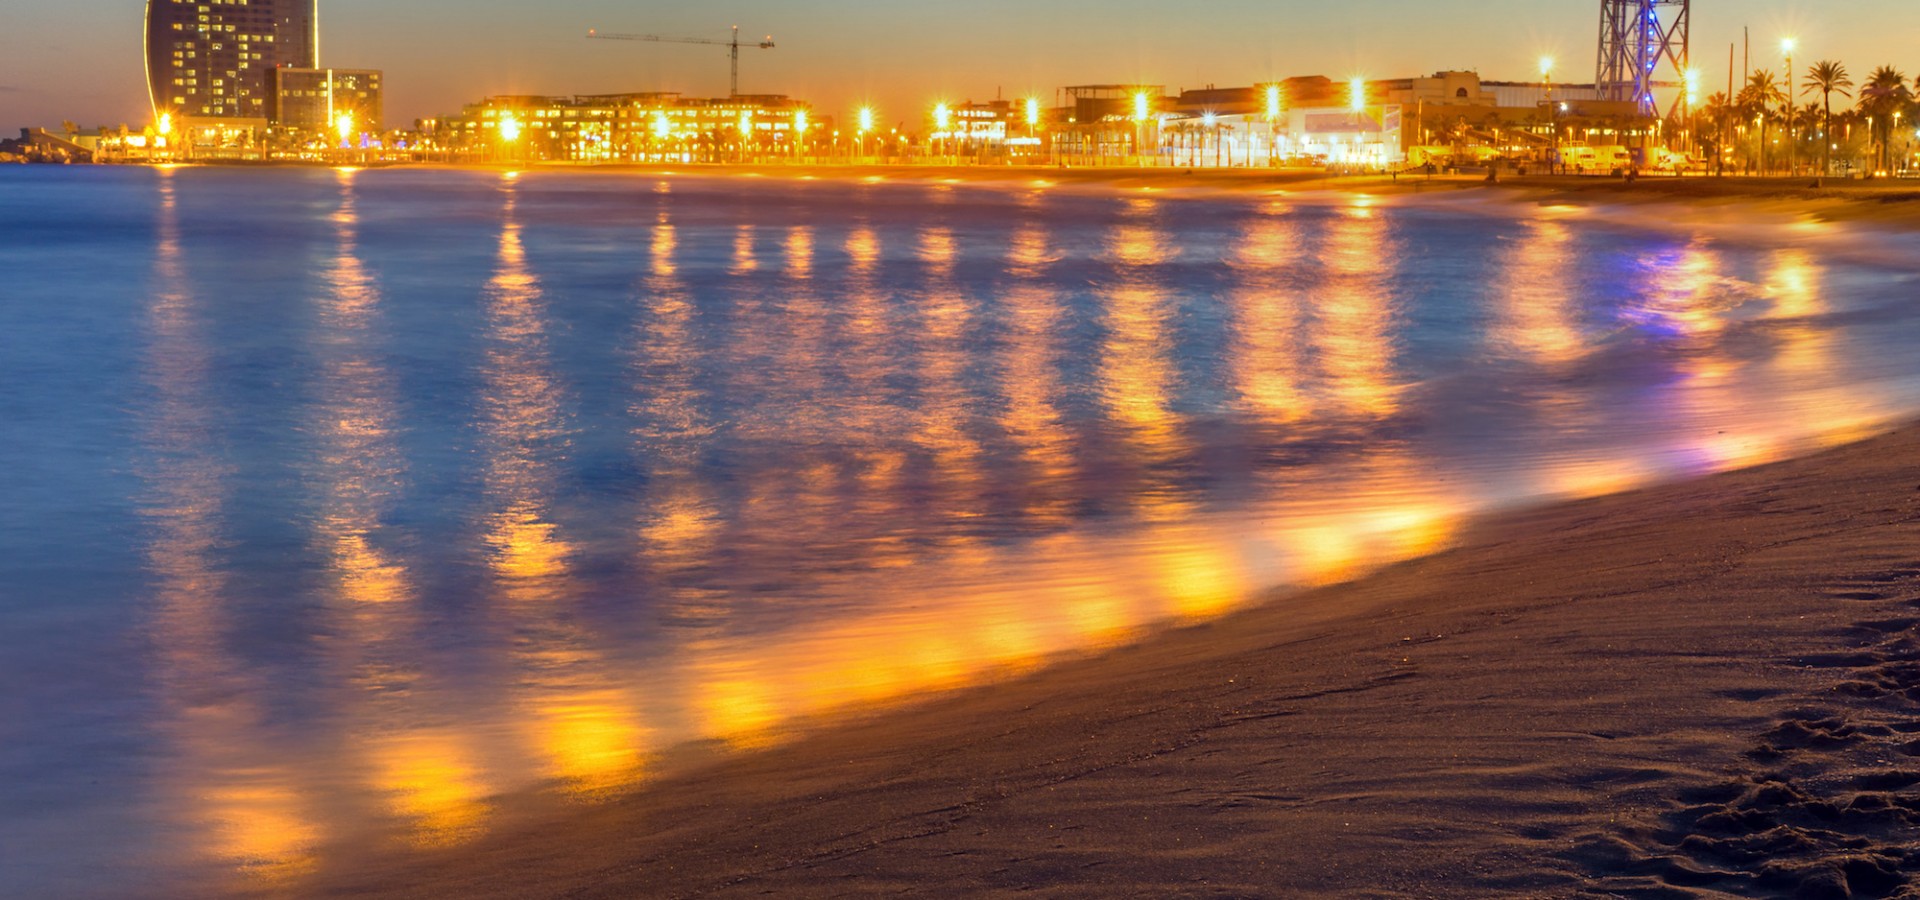 Barcelona beach after sunset